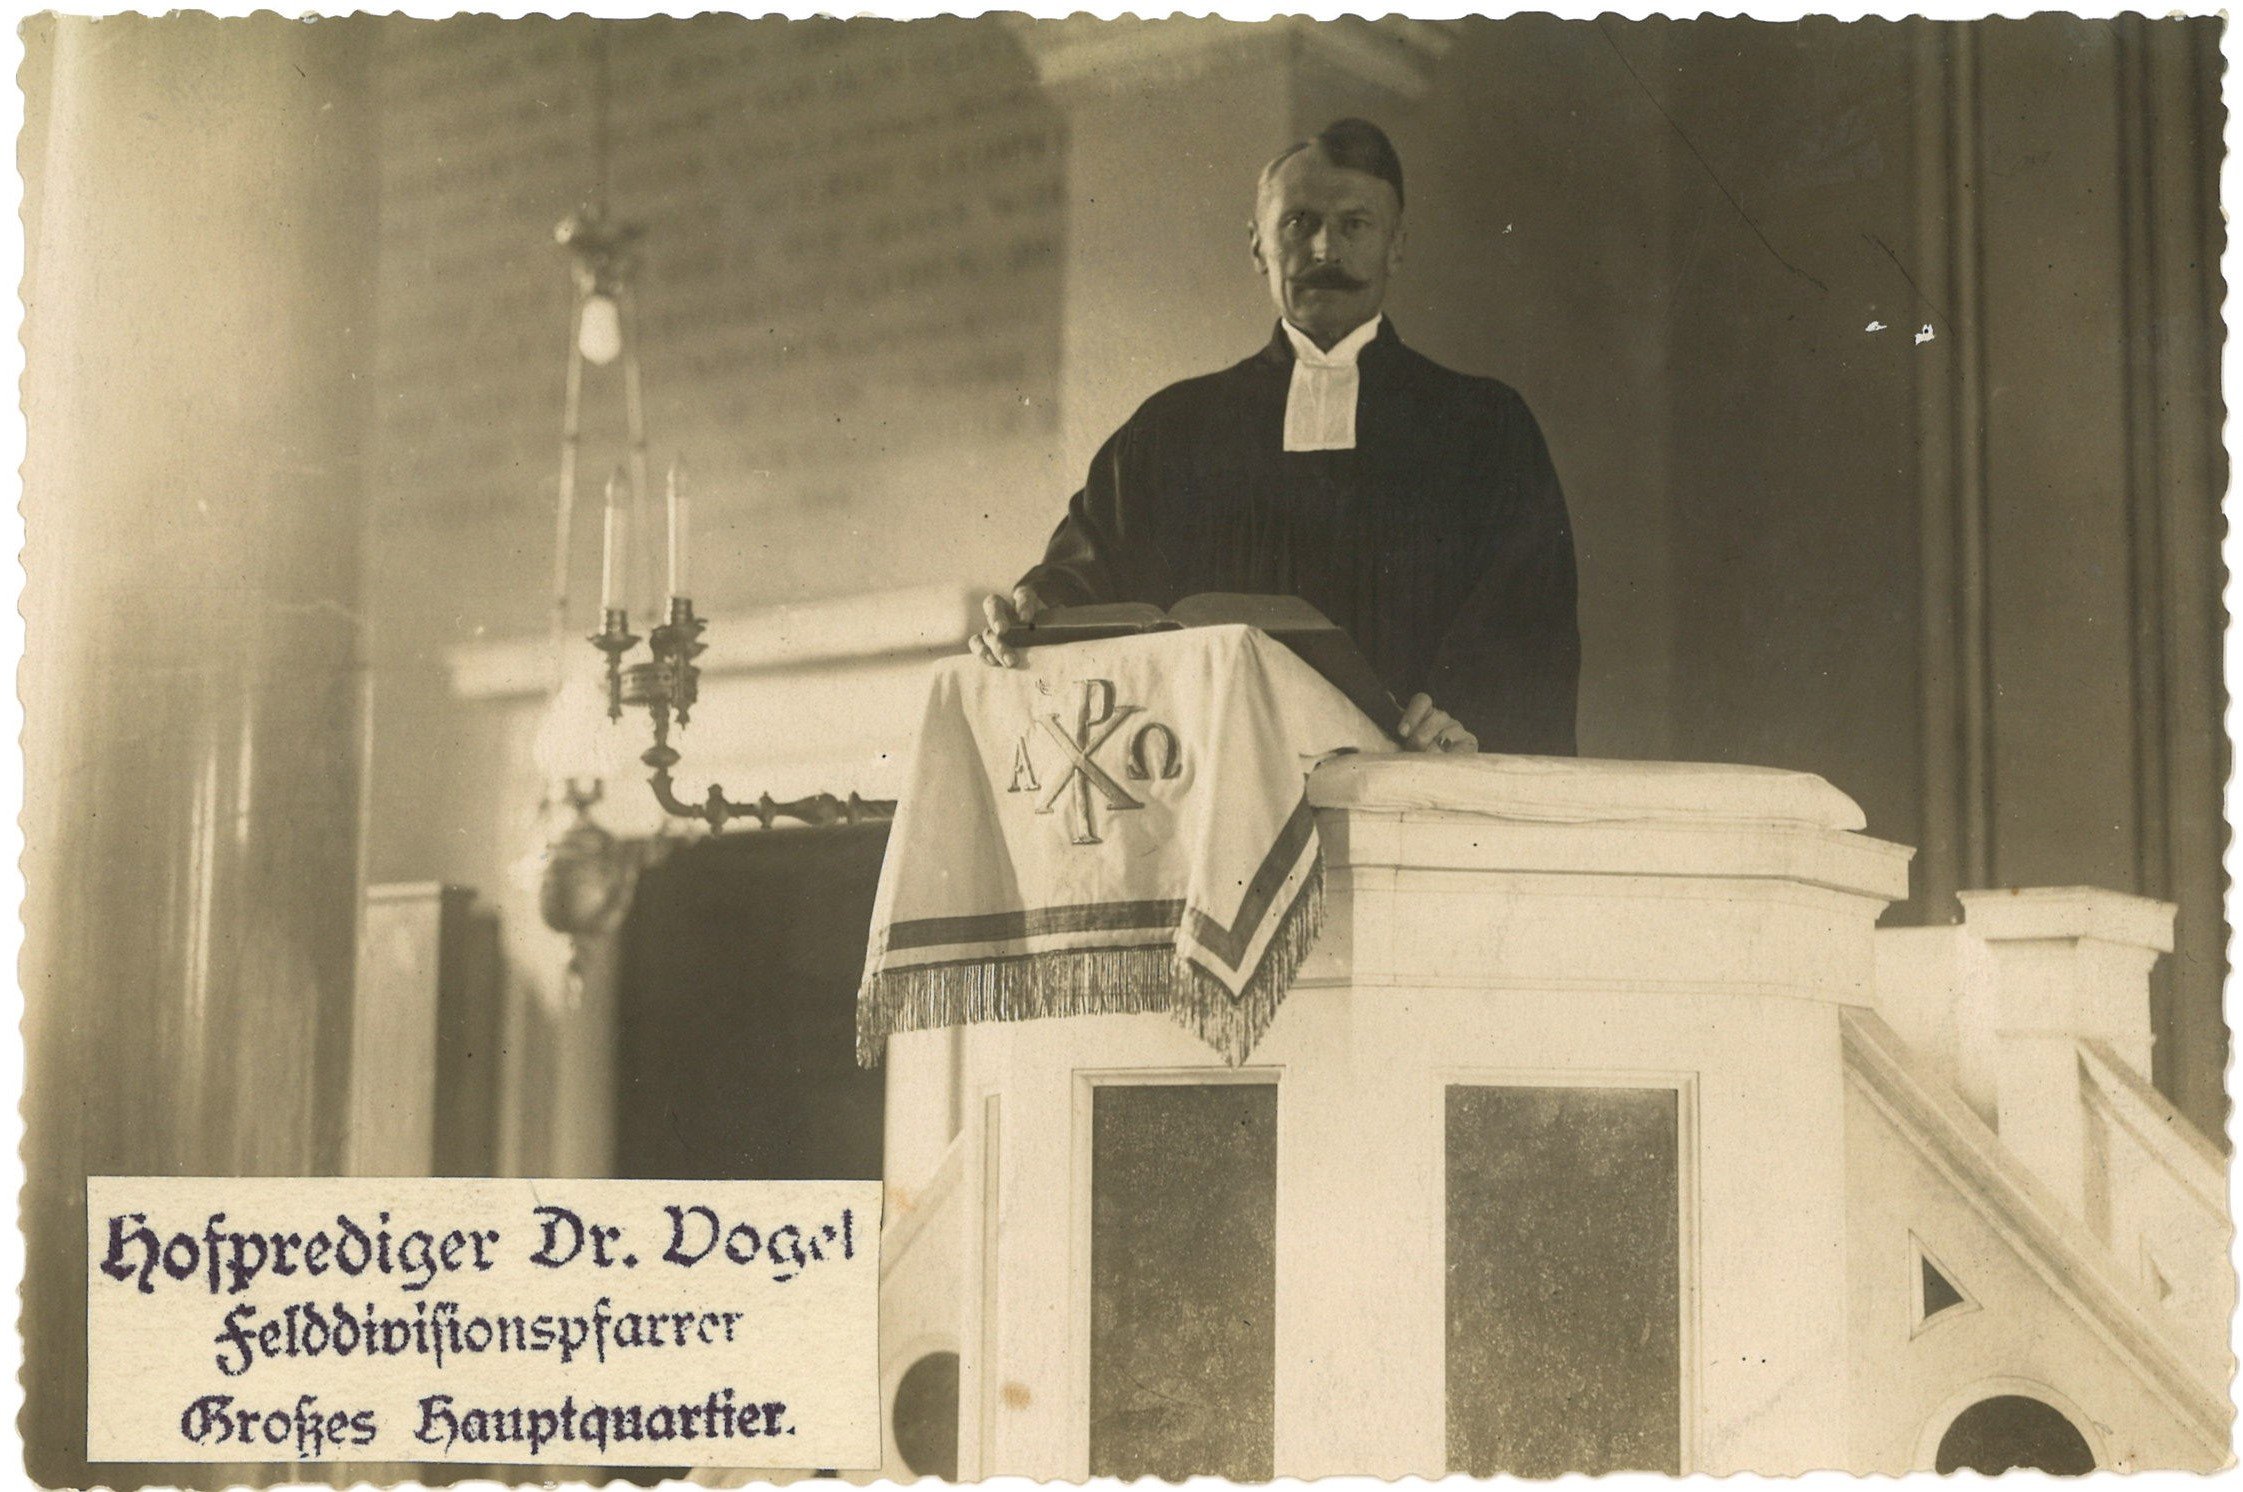 Vogel, Johannes (1873-1933), evang. Pfarrer, Hofprediger (Landesgeschichtliche Vereinigung für die Mark Brandenburg e.V., Archiv CC BY)